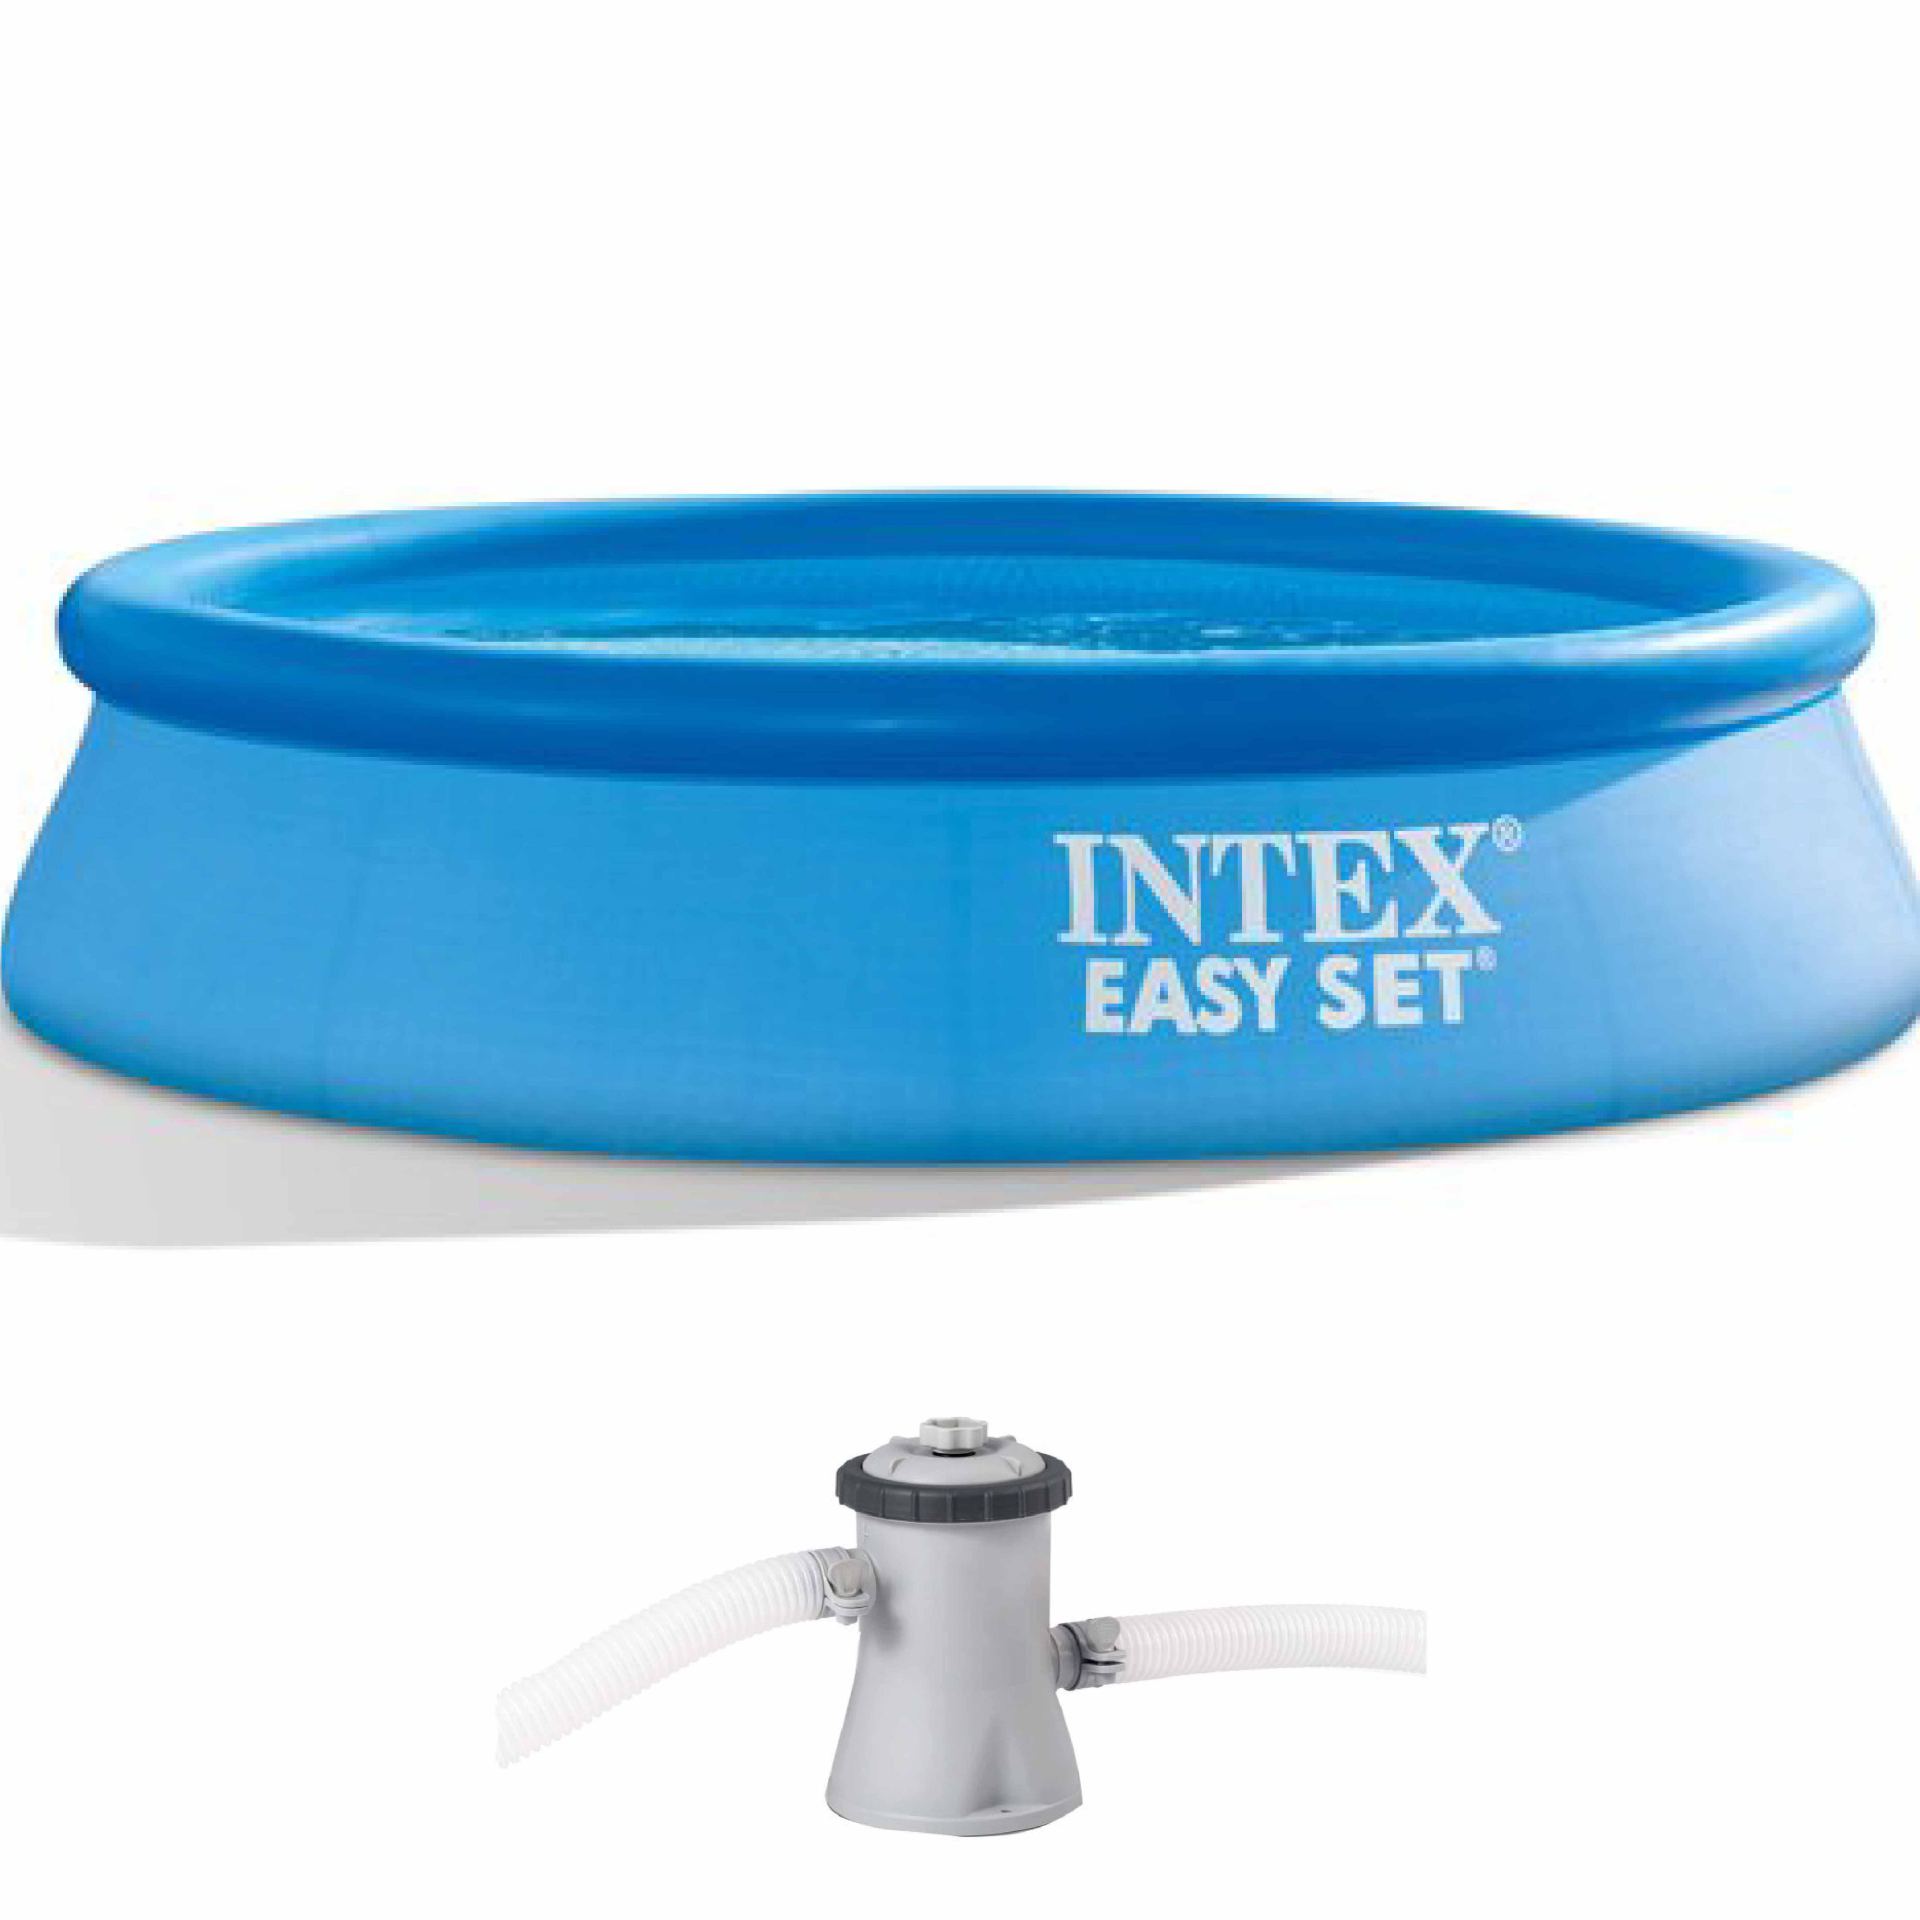 Intex easy set pool set 305cm x 76cm